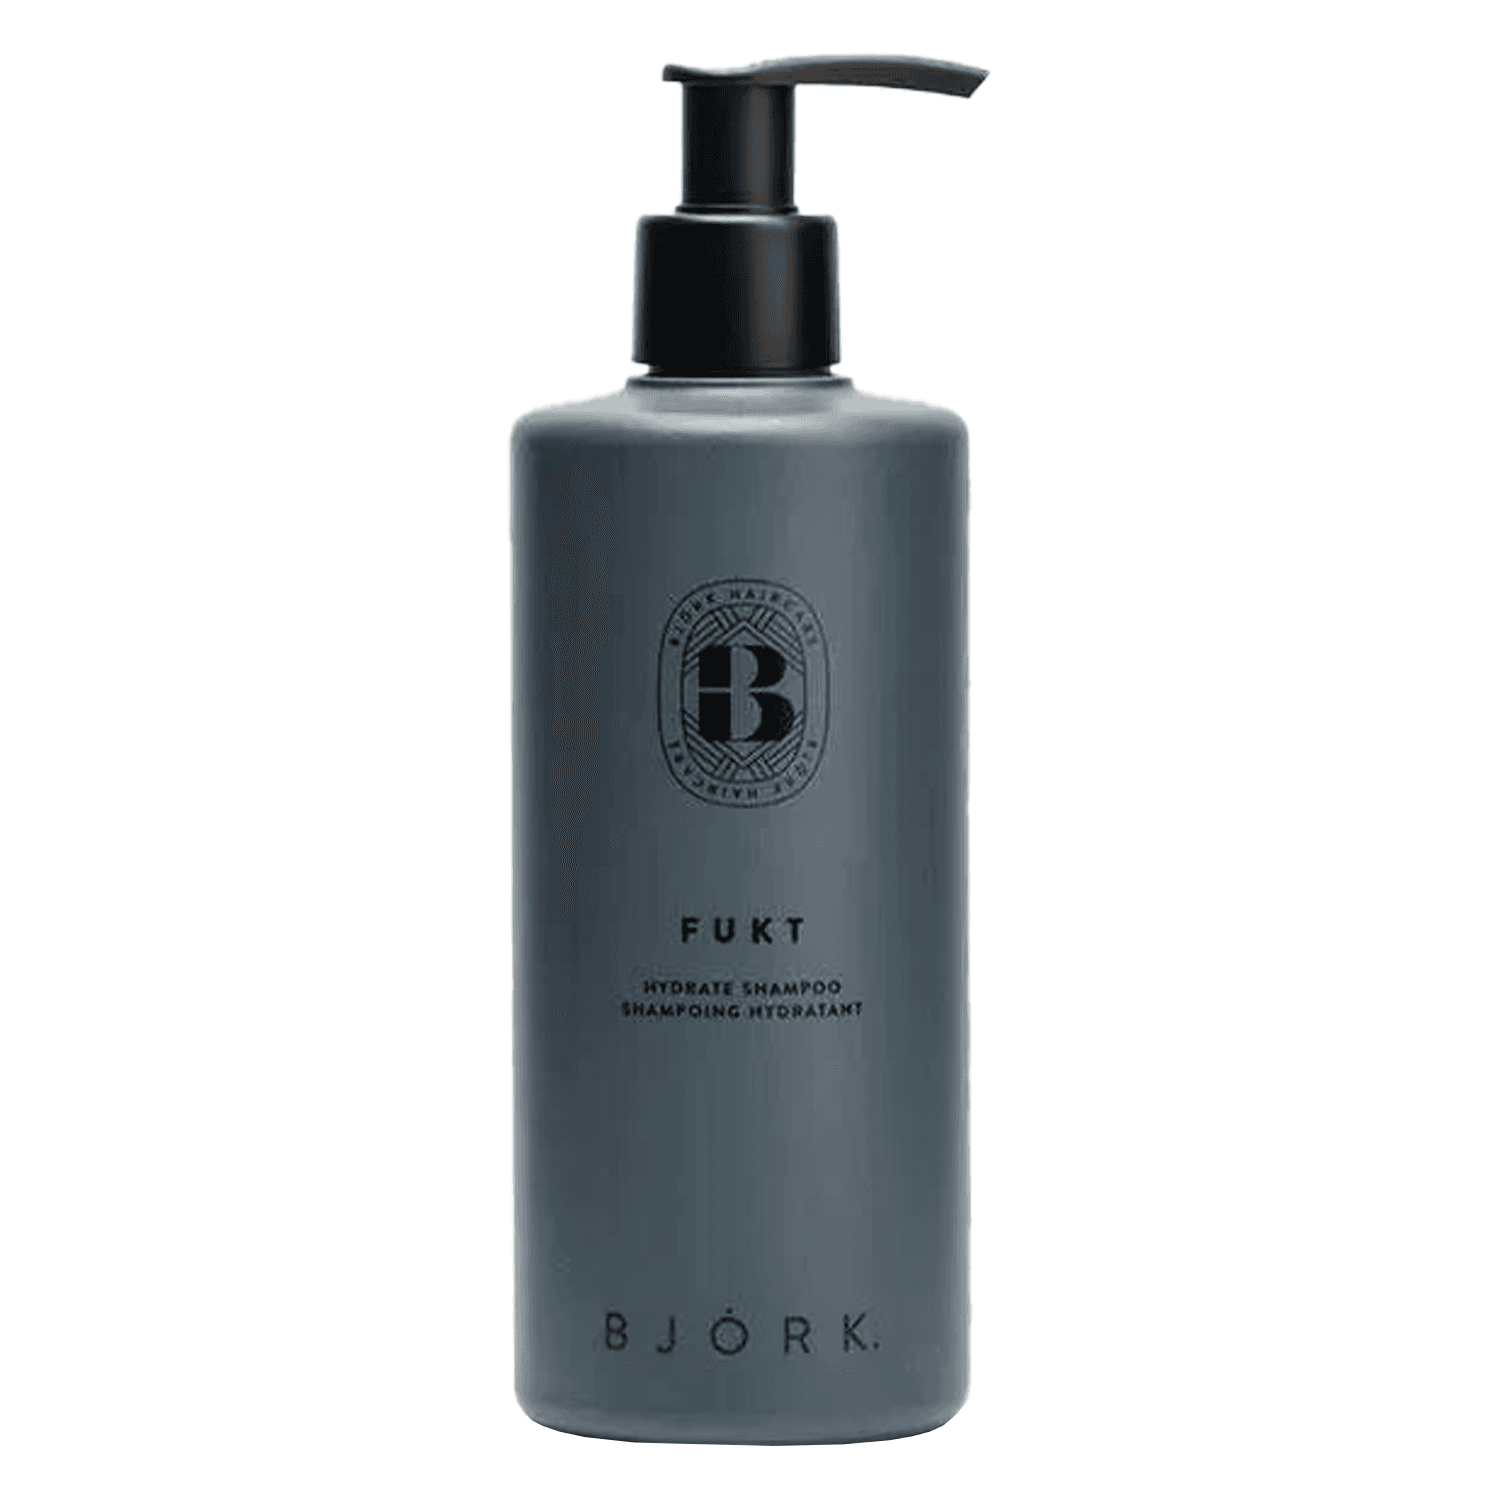 BJÖRK - Fukt Hydrate Shampoo